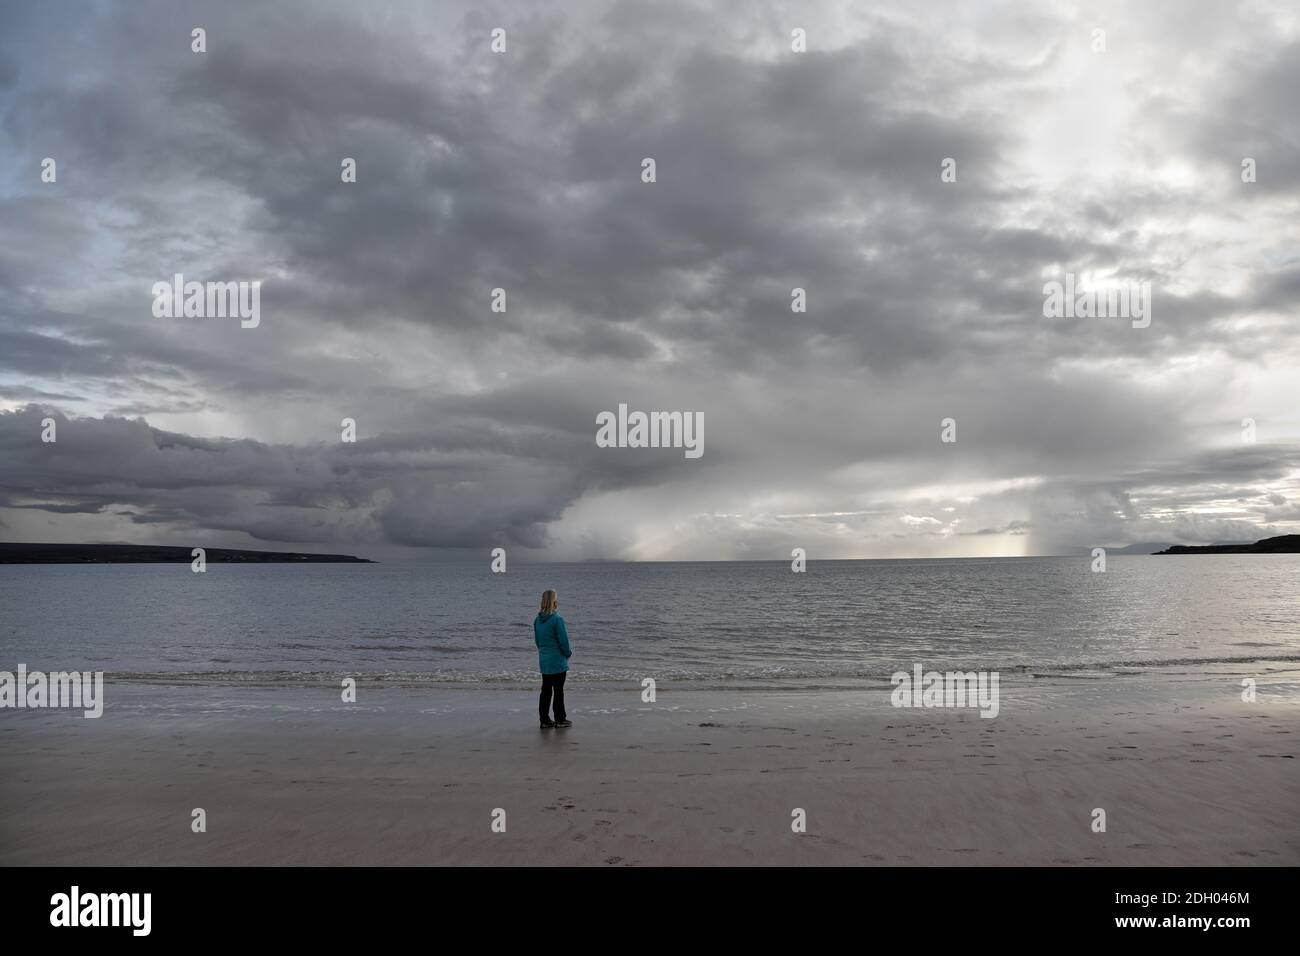 Donna su una spiaggia deserta che guarda verso le nuvole di tempesta Clearing sull'orizzonte, Sands Bay, Gairloch, Scozia, Regno Unito Foto Stock